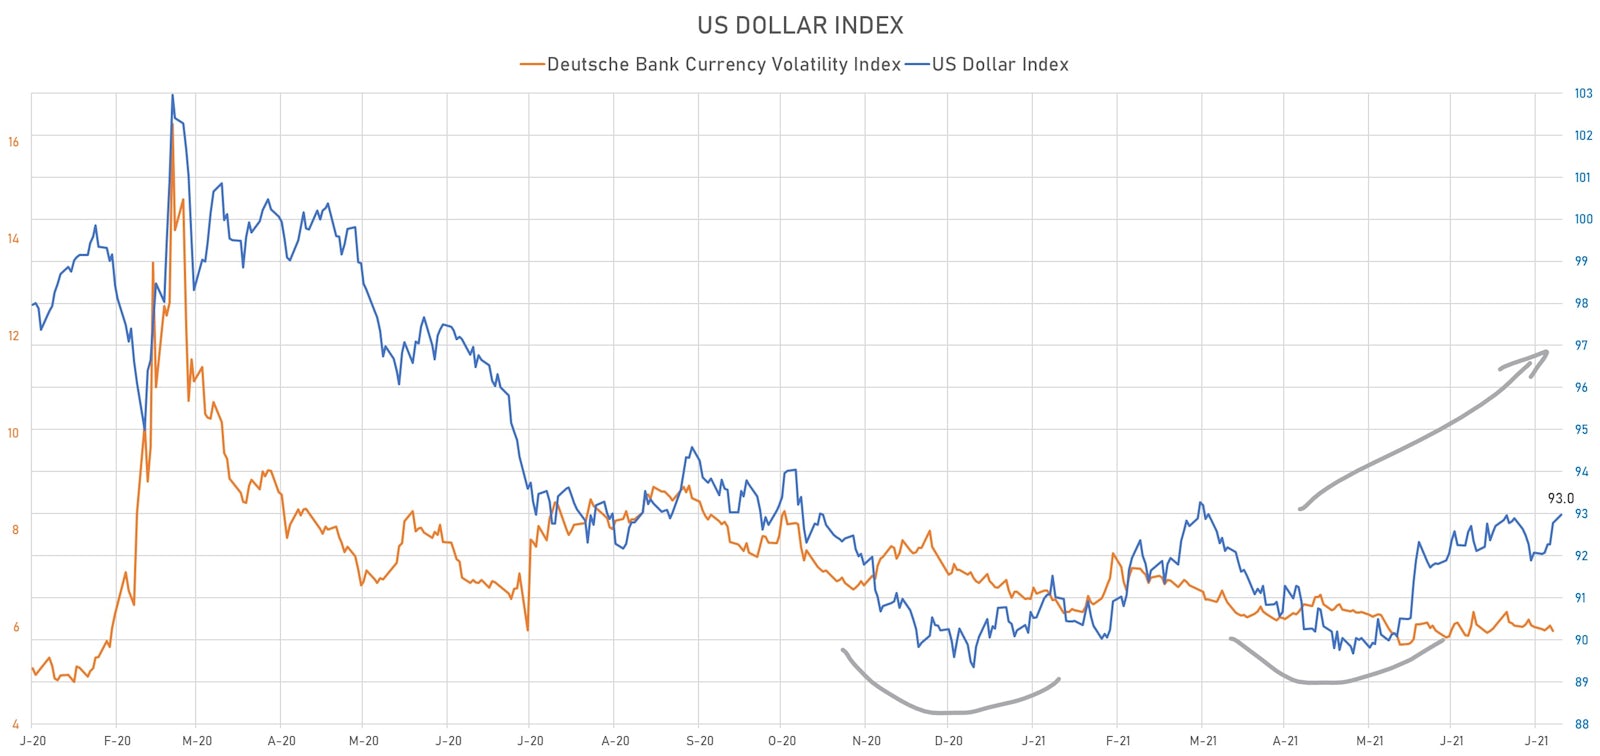 US Dollar Index & Deutsche Bank Currency Volatility Index | Sources: ϕpost, Refinitiv data 